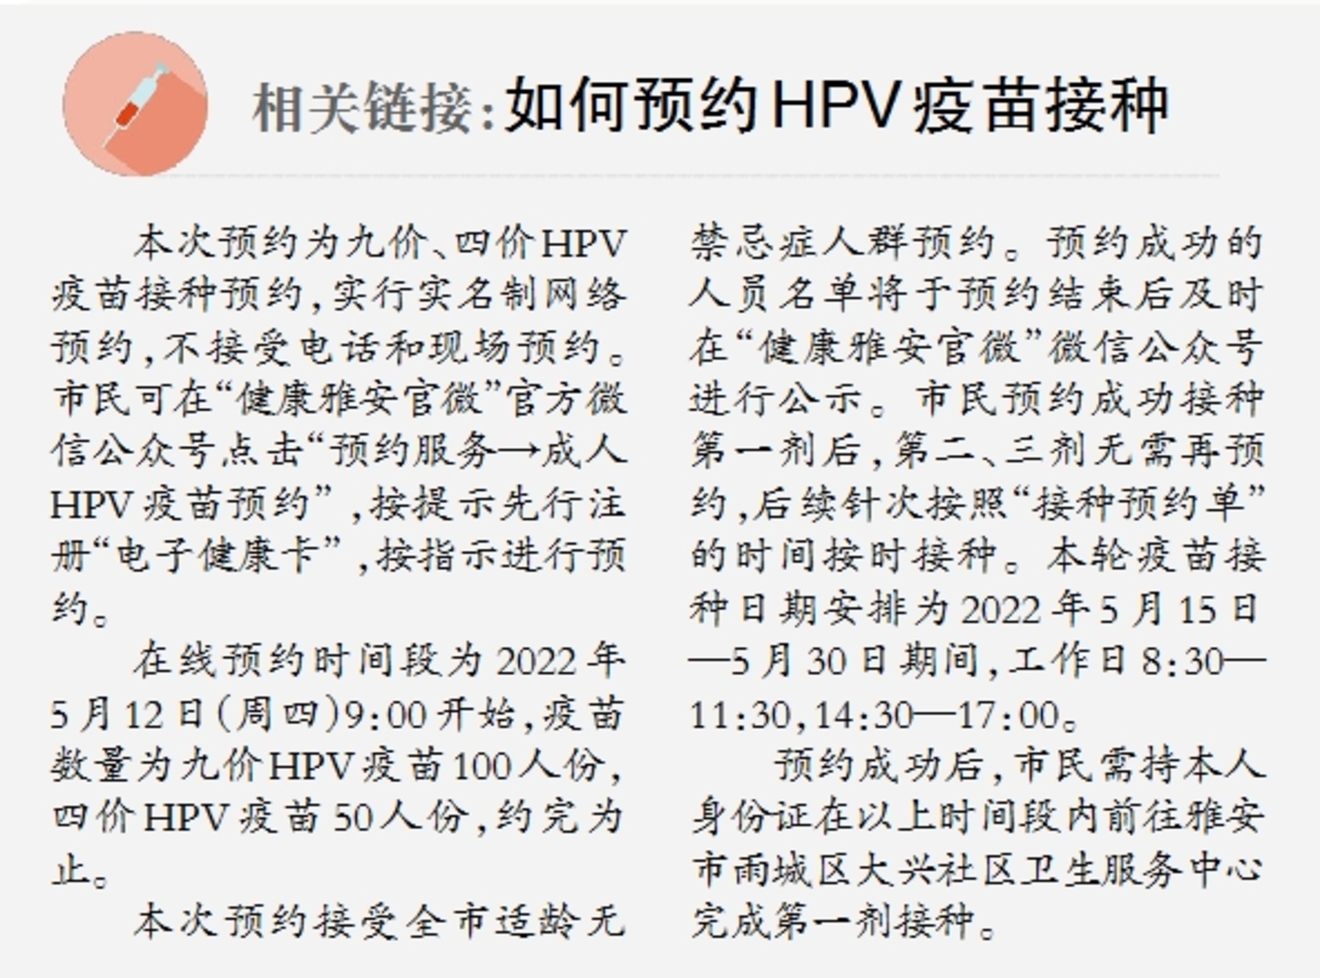 150人份HPV疫苗预约接种服务今日启动